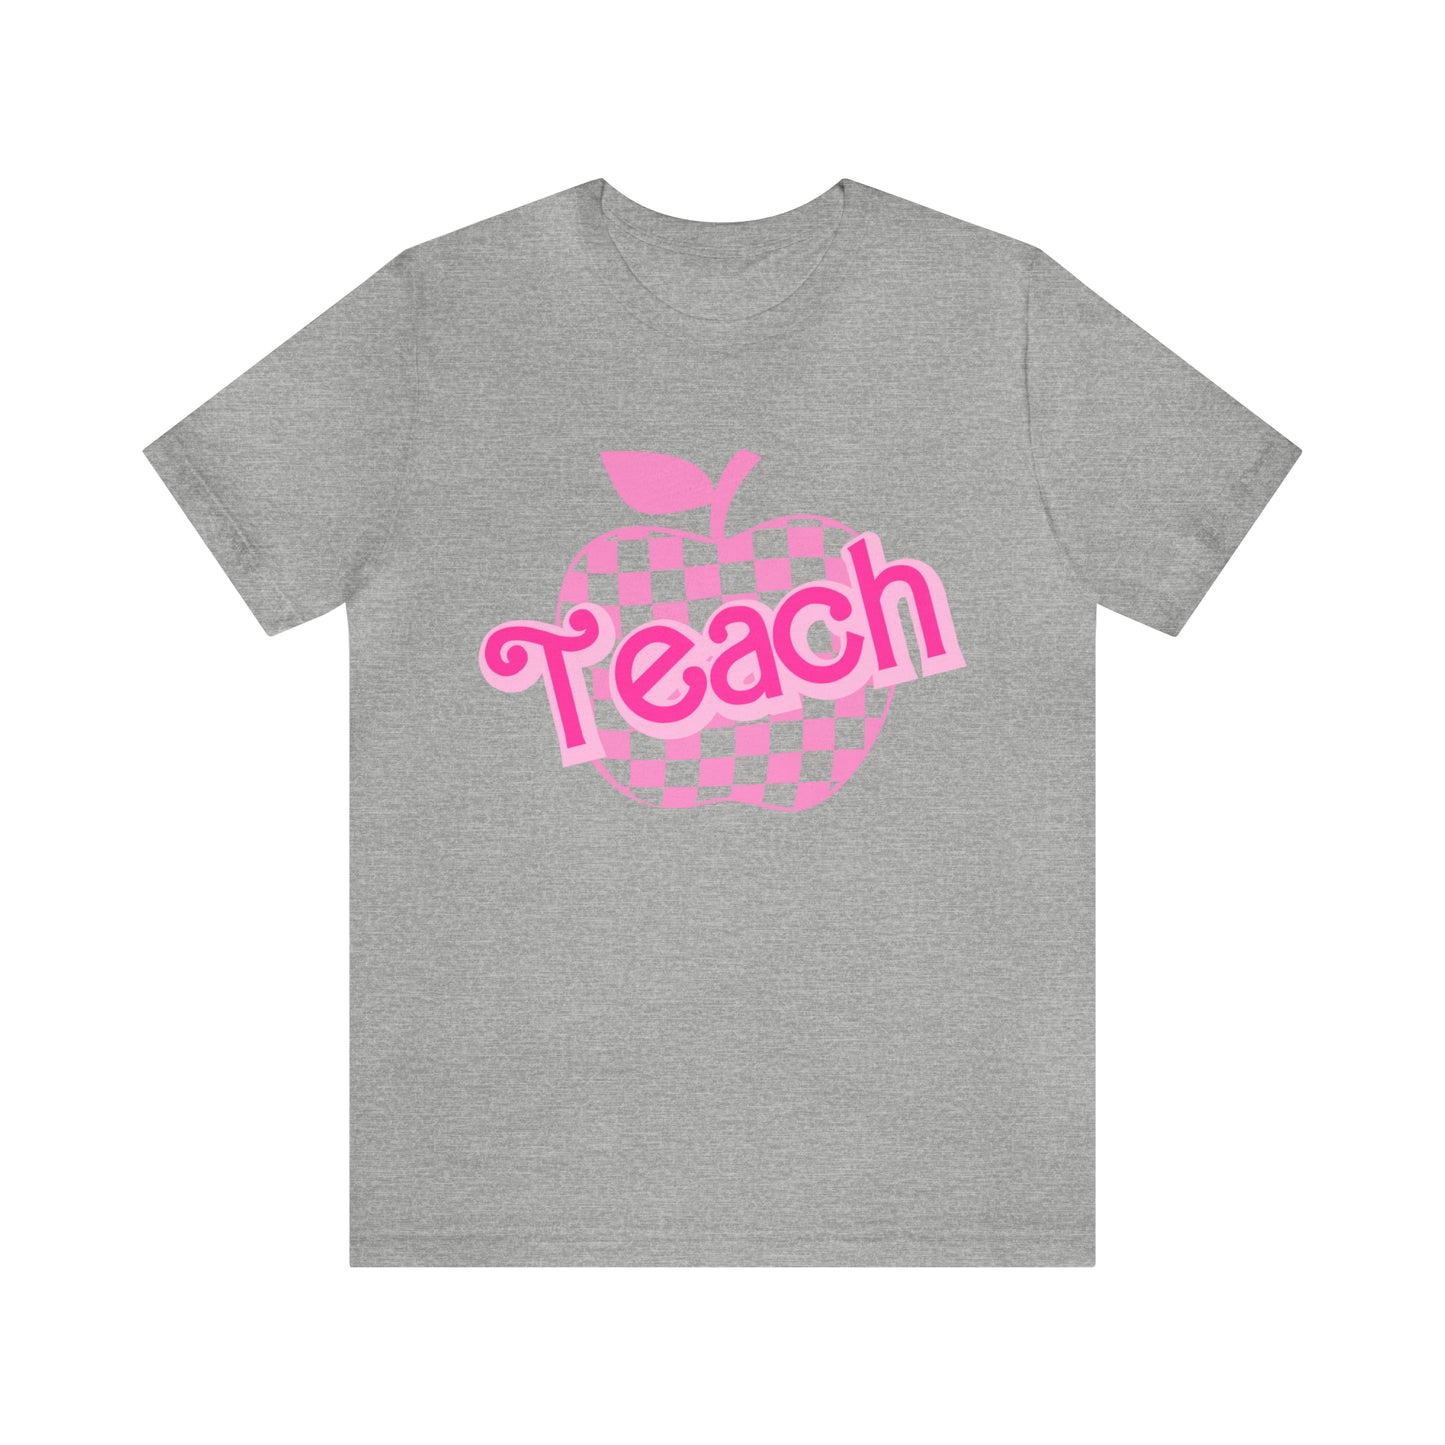 Pink Checkered Teacher Shirts, Trendy Teacher T Shirt, Retro Back to school, Teacher Appreciation, Apple Checkered Teacher Tee, T737